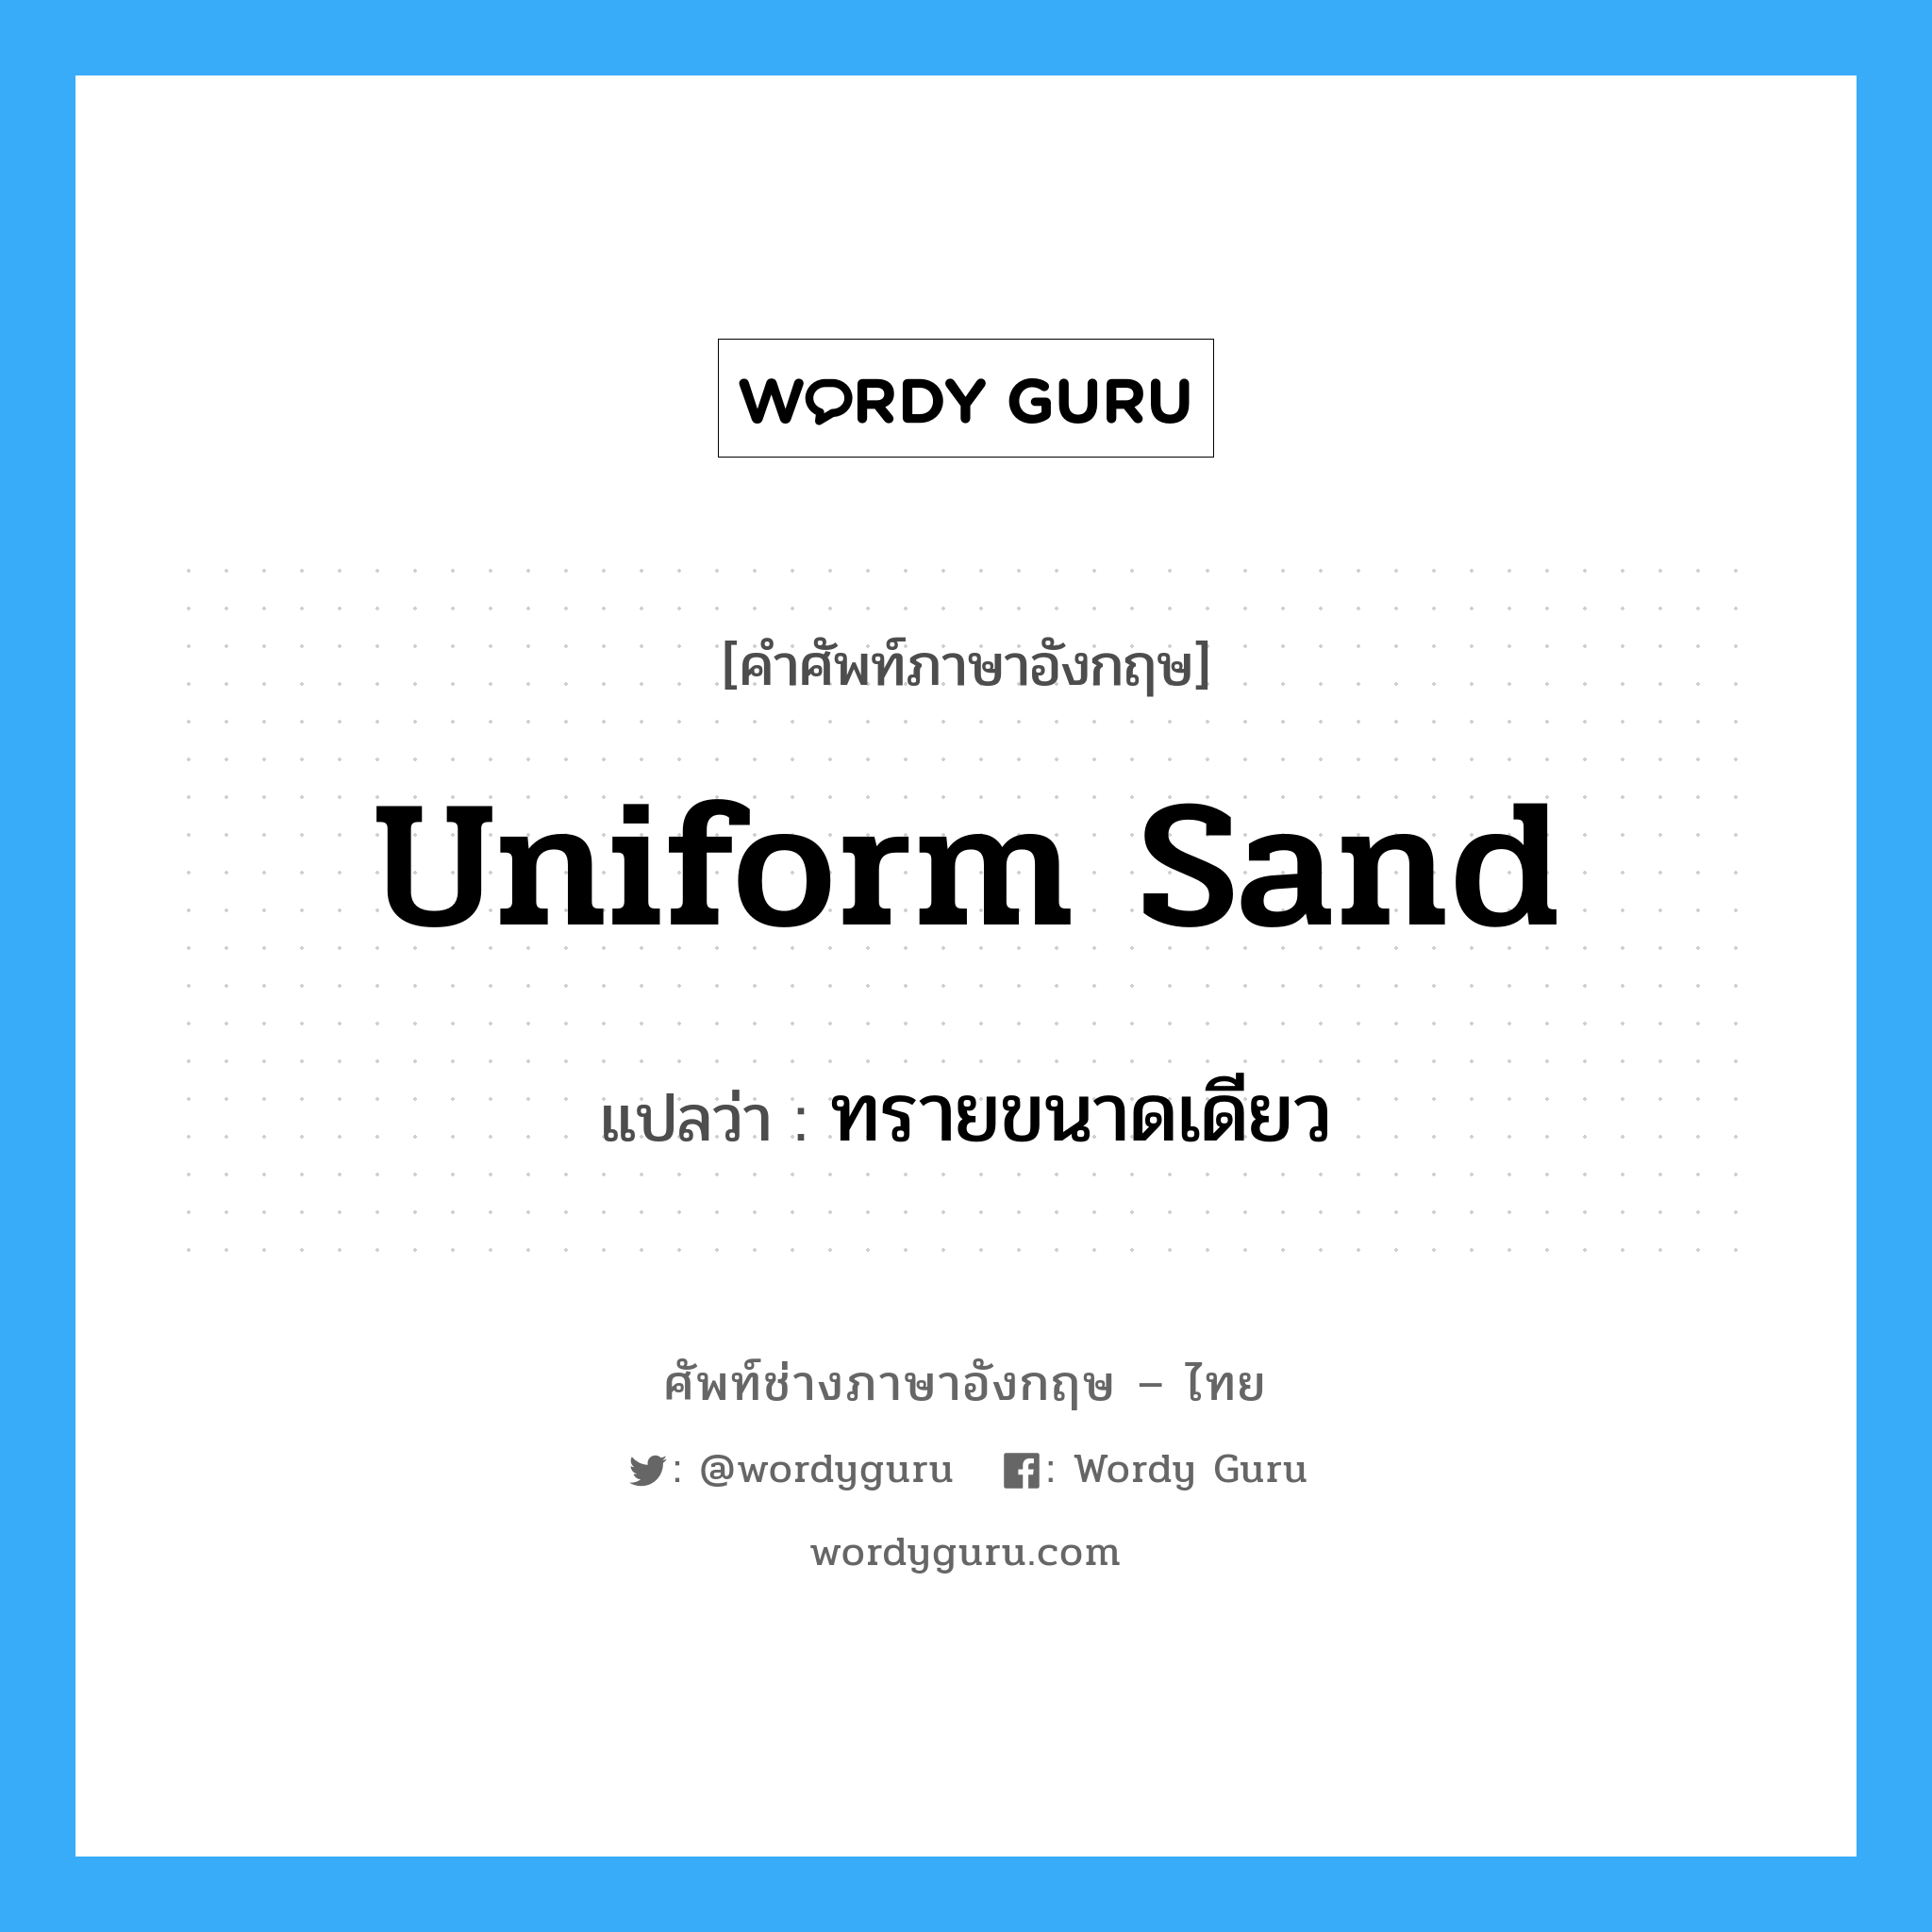 uniform sand แปลว่า?, คำศัพท์ช่างภาษาอังกฤษ - ไทย uniform sand คำศัพท์ภาษาอังกฤษ uniform sand แปลว่า ทรายขนาดเดียว